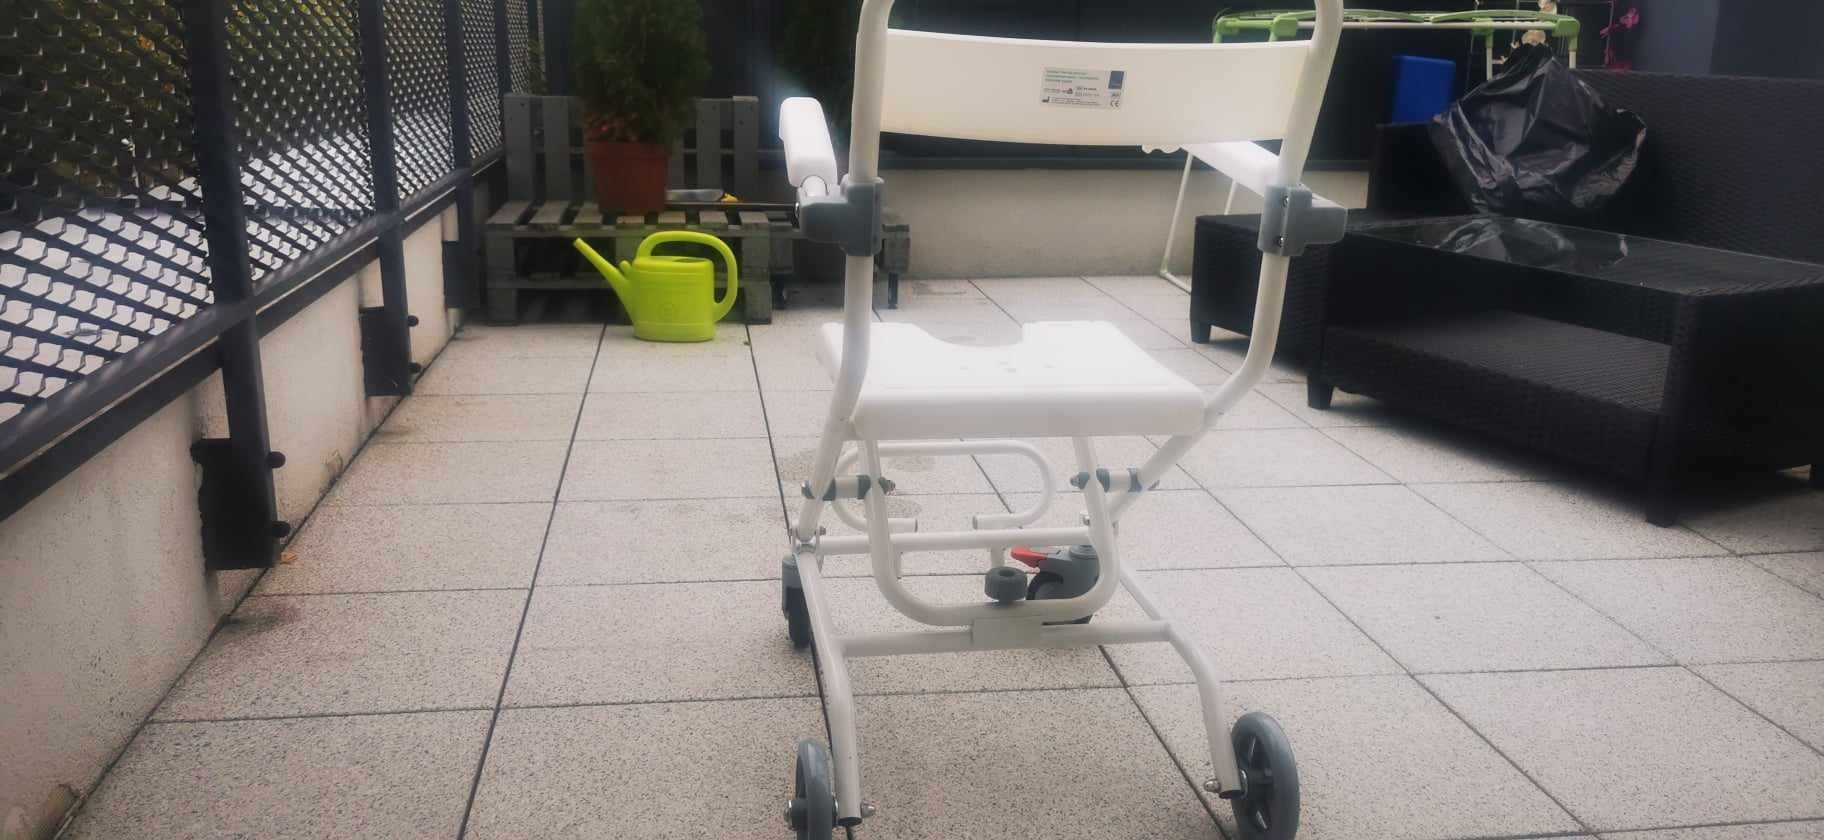 Wózek pod natrysk krzesełko fotel dla niepełnosprawnej osoby